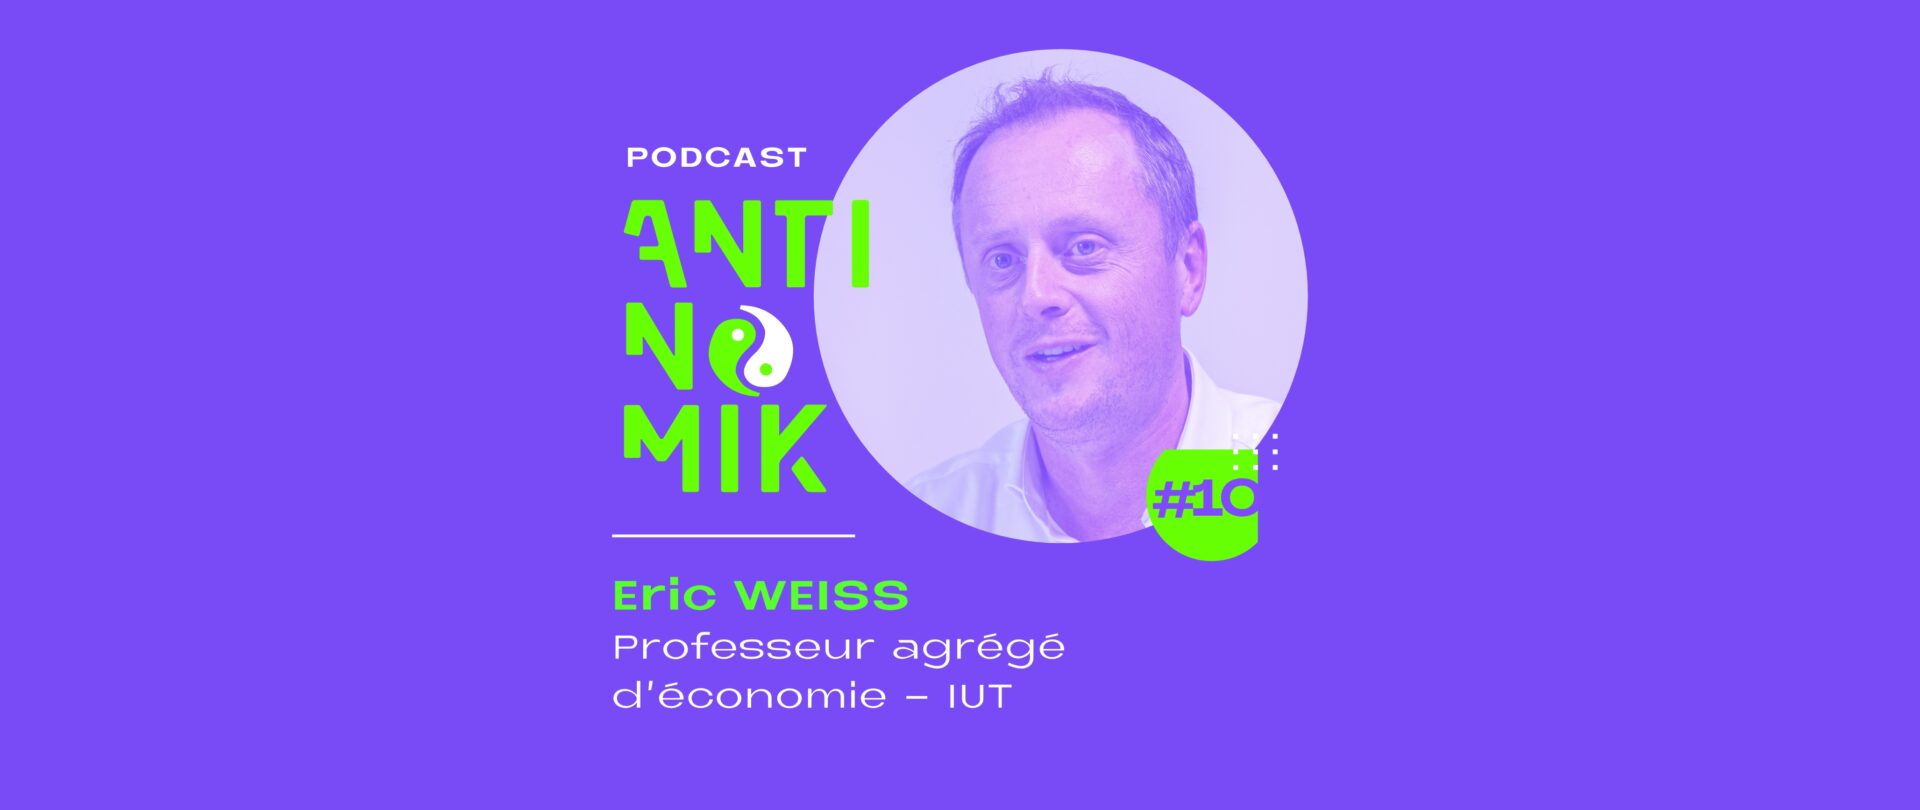 Eric WEISS – Professeur agrégé d’économie – IUT